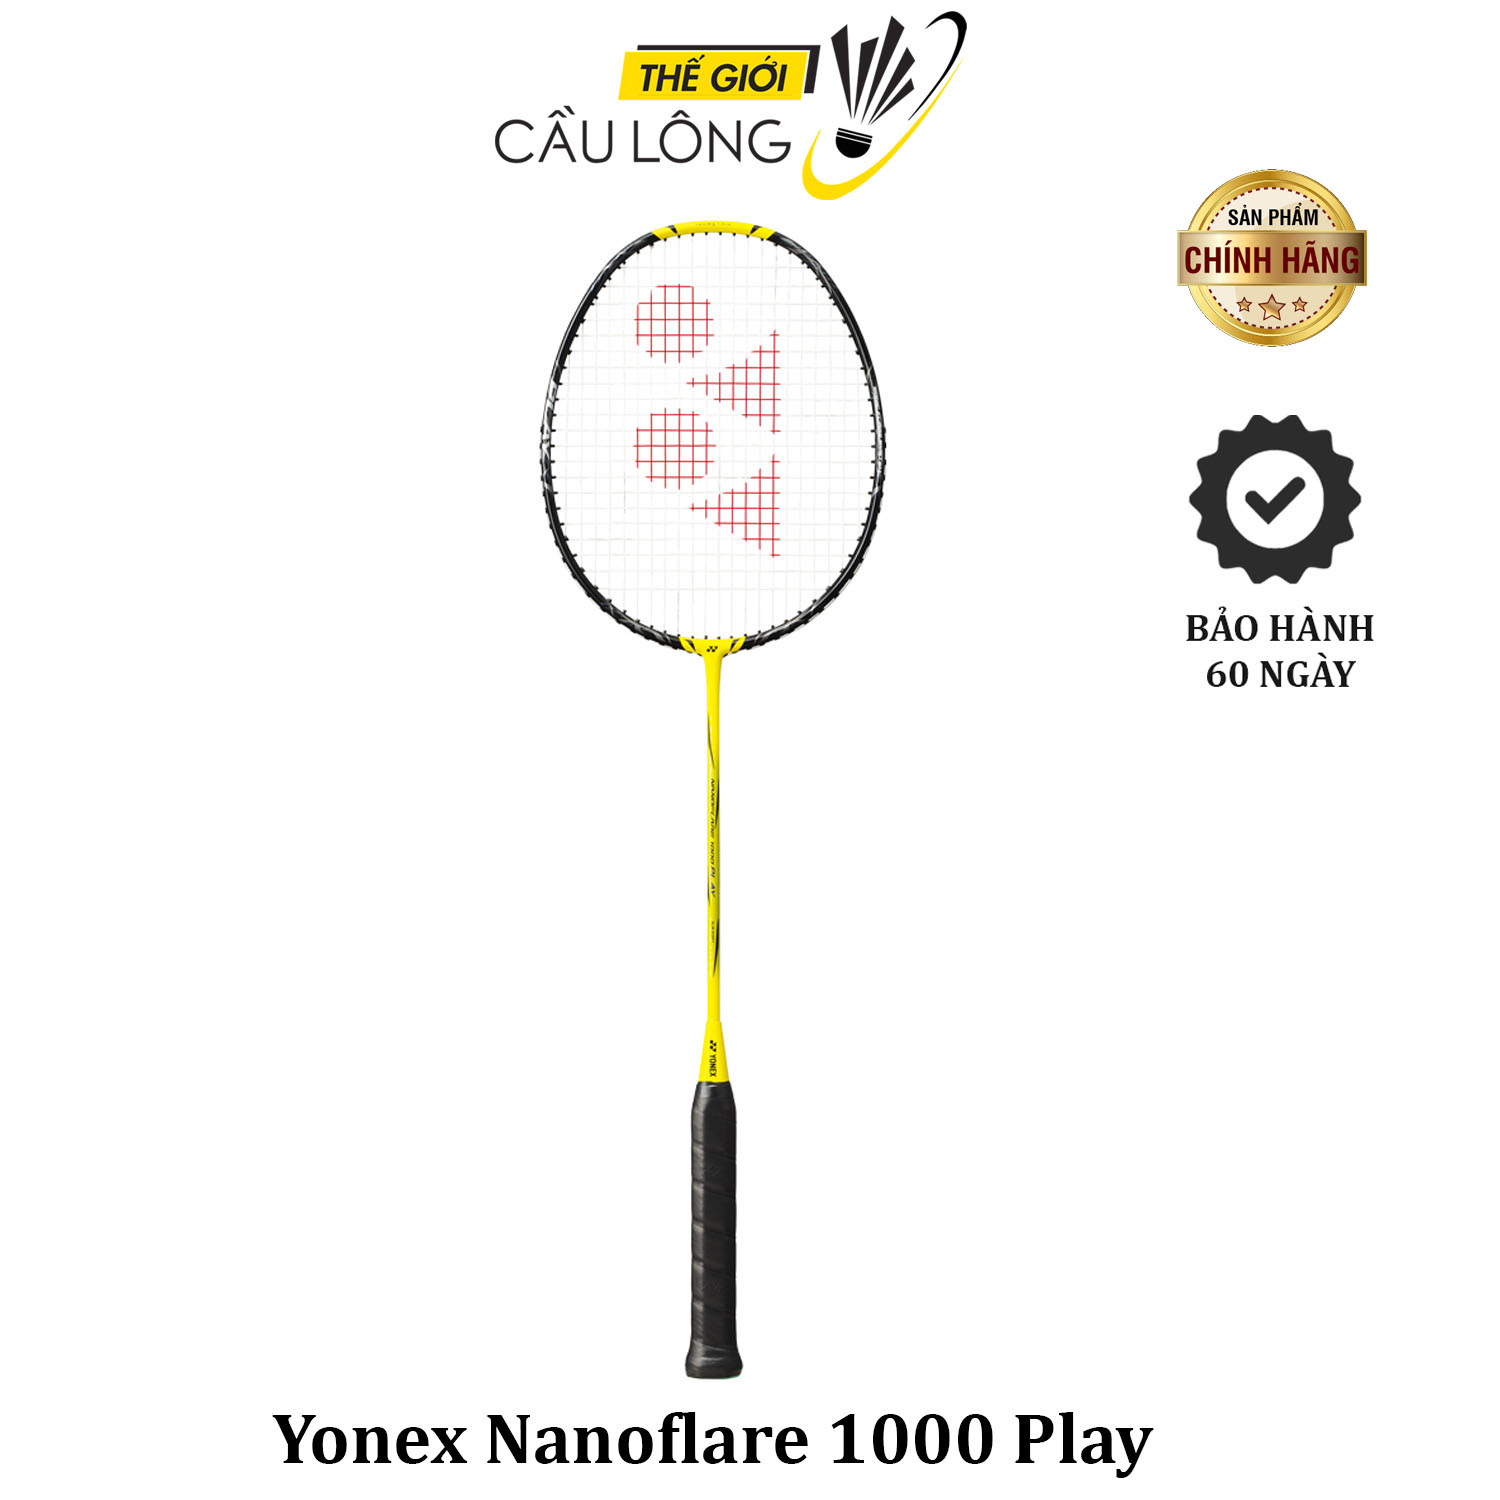 Yonex nanoflare 1000 Play